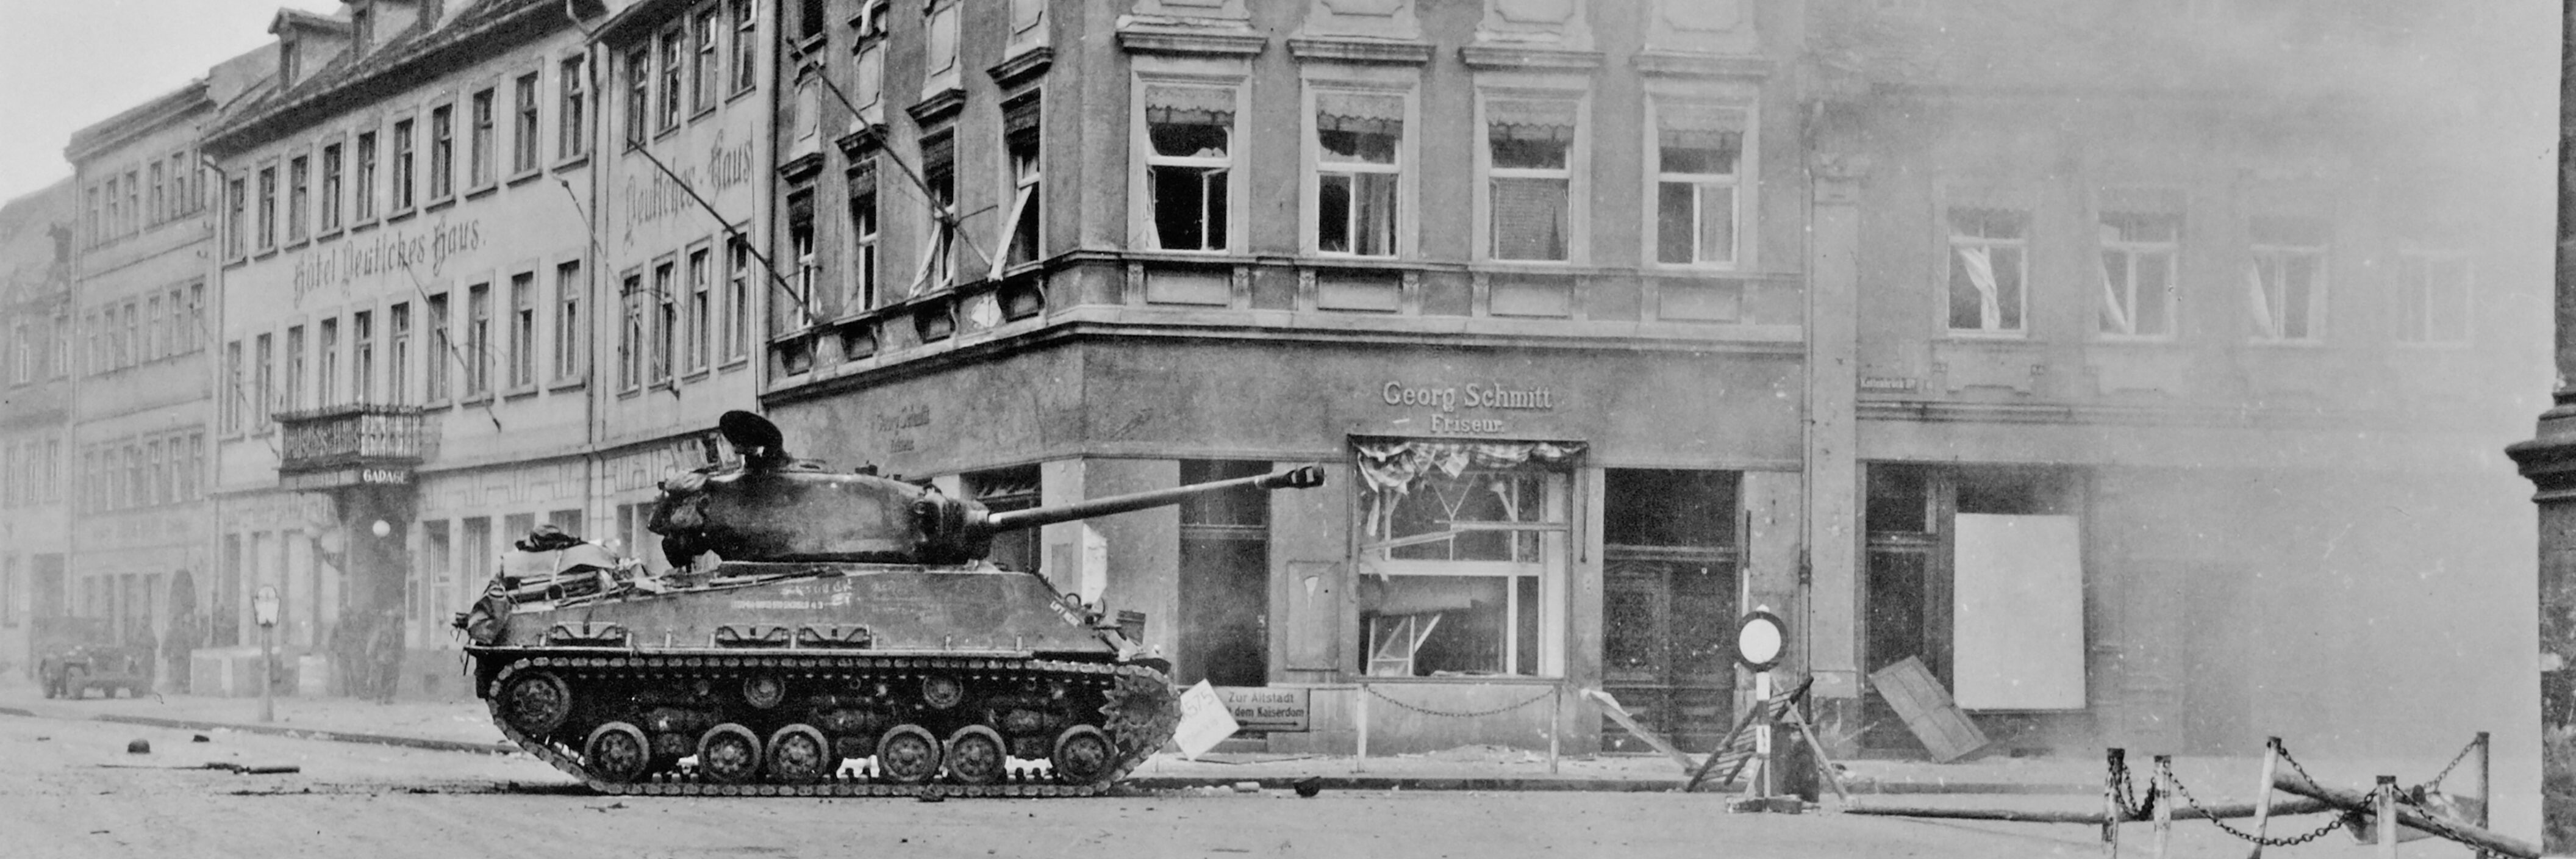 Amerikanischer Panzer in der Koenigsstrasse in Bamberg